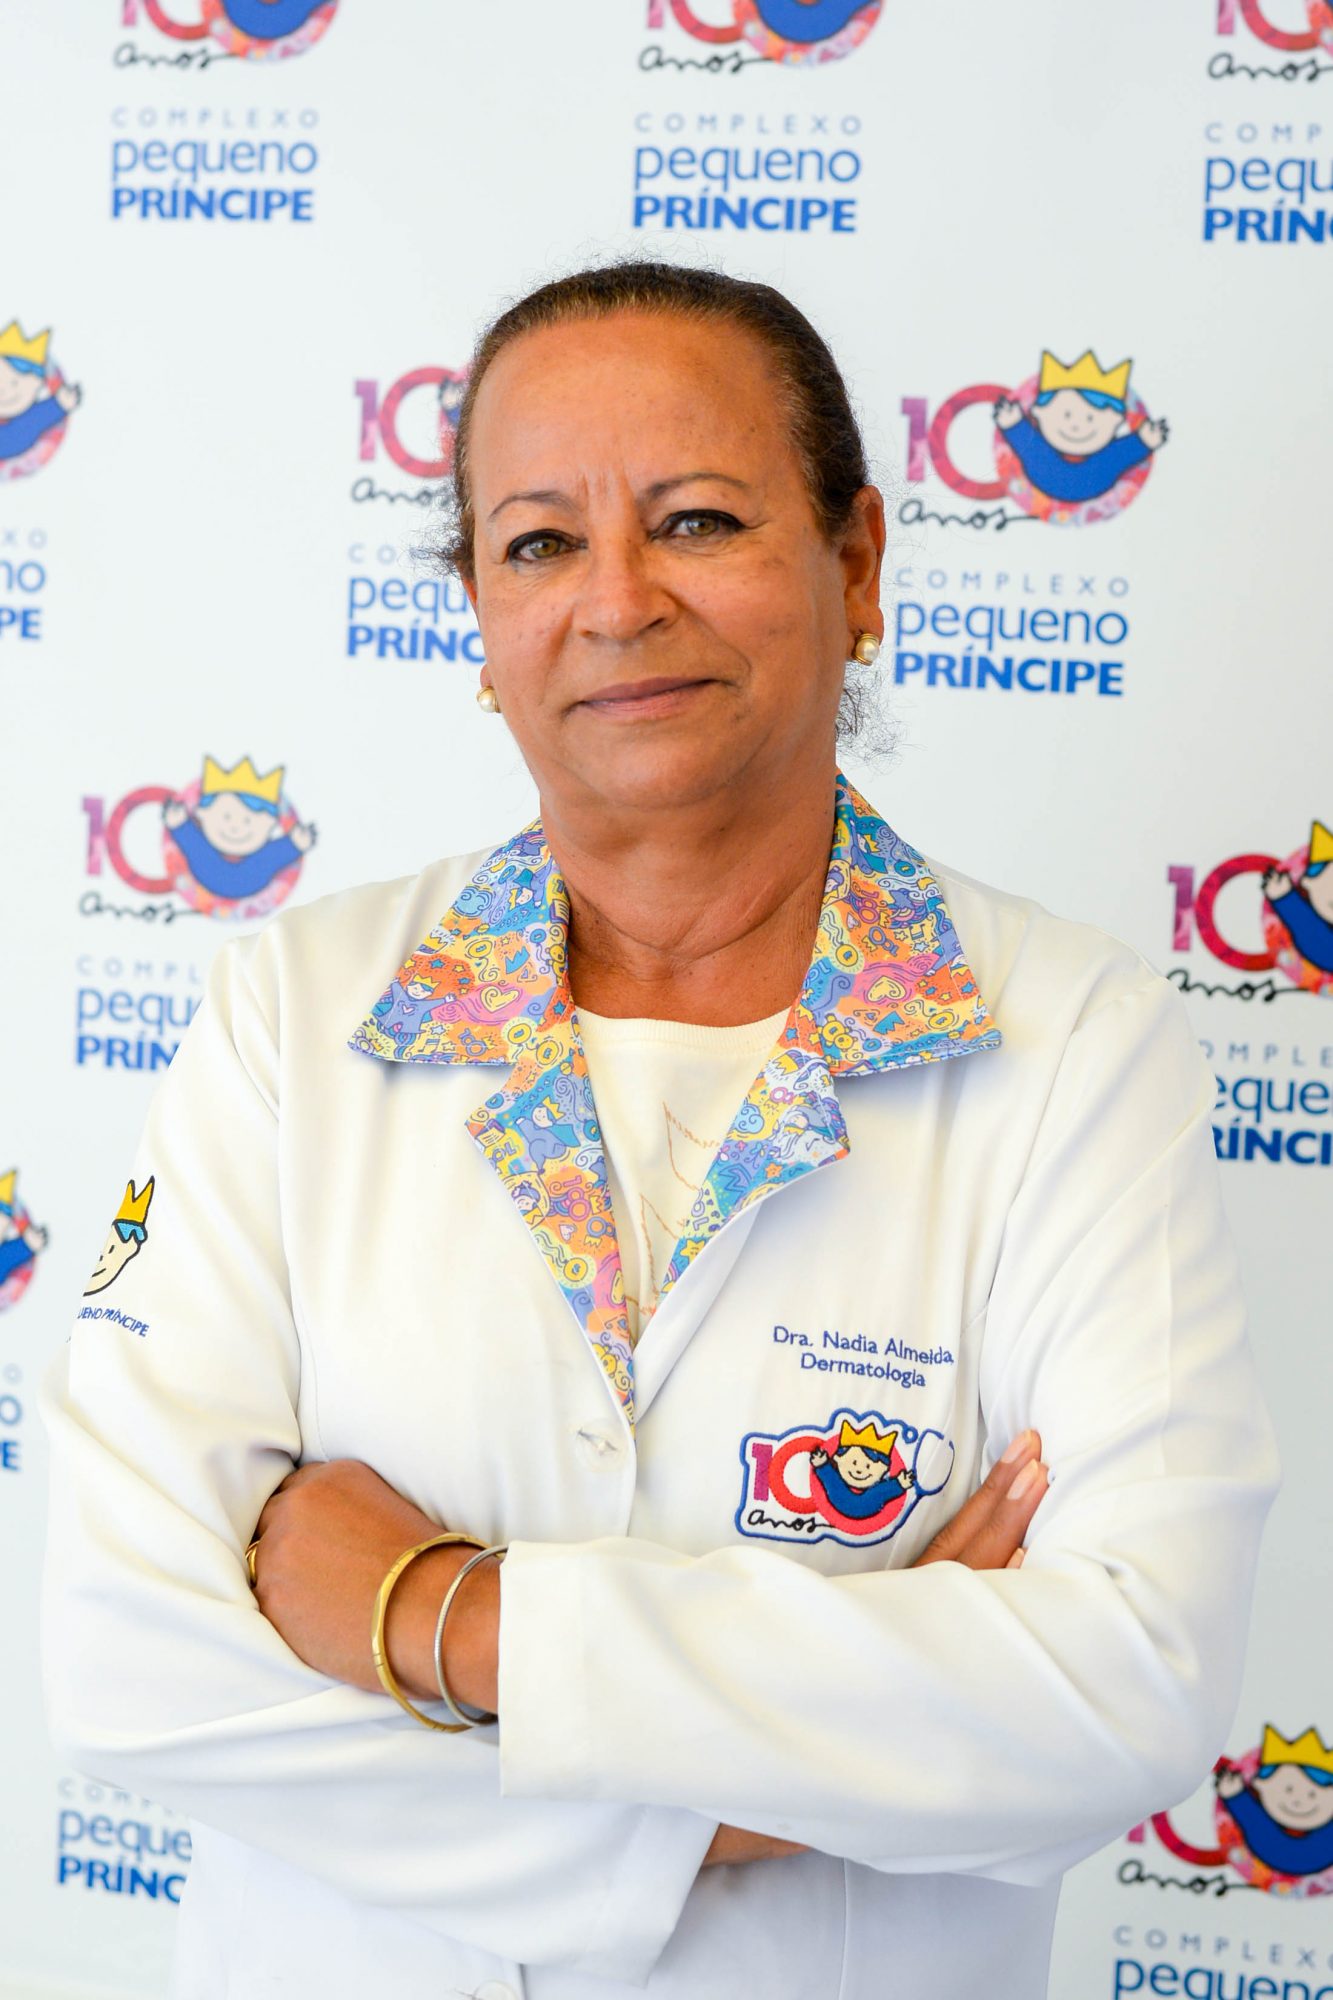 Dra. Nadia Aparecida Pereira de Almeida